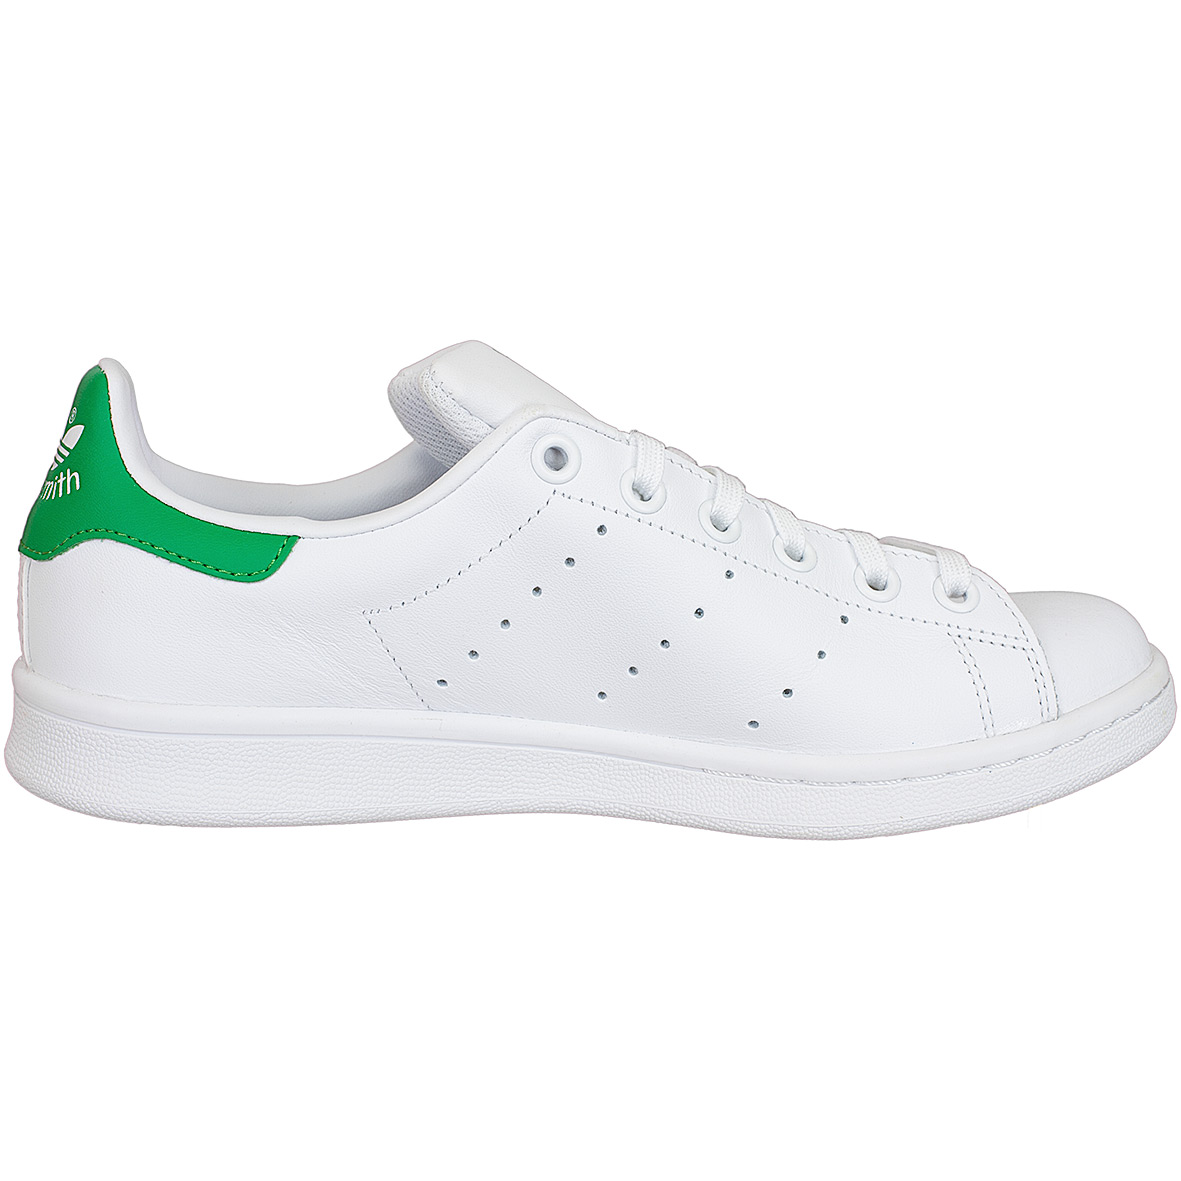 ☆ Adidas Originals Damen Sneaker Stan Smith weiß/grün - hier bestellen!